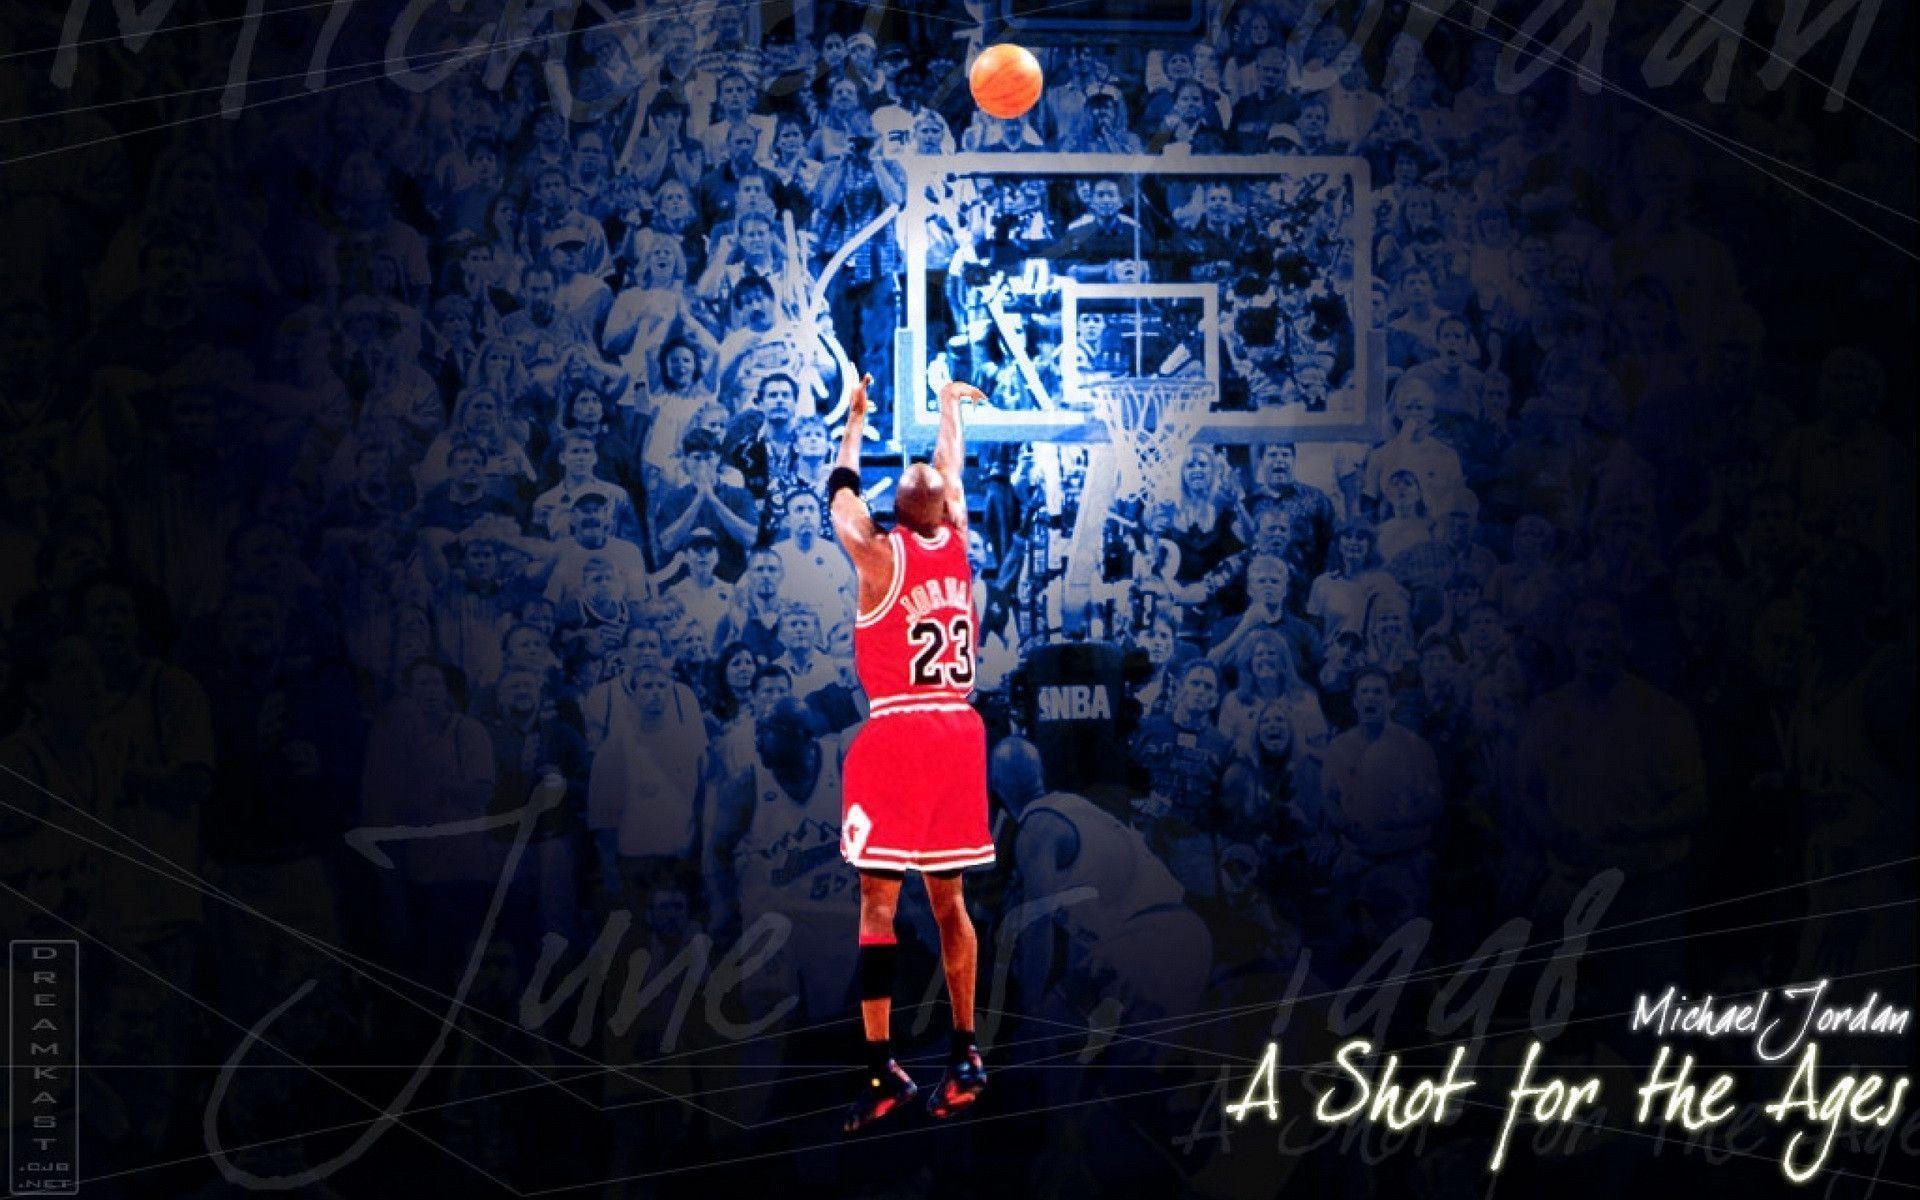 Michael Jordan HD Wallpapers